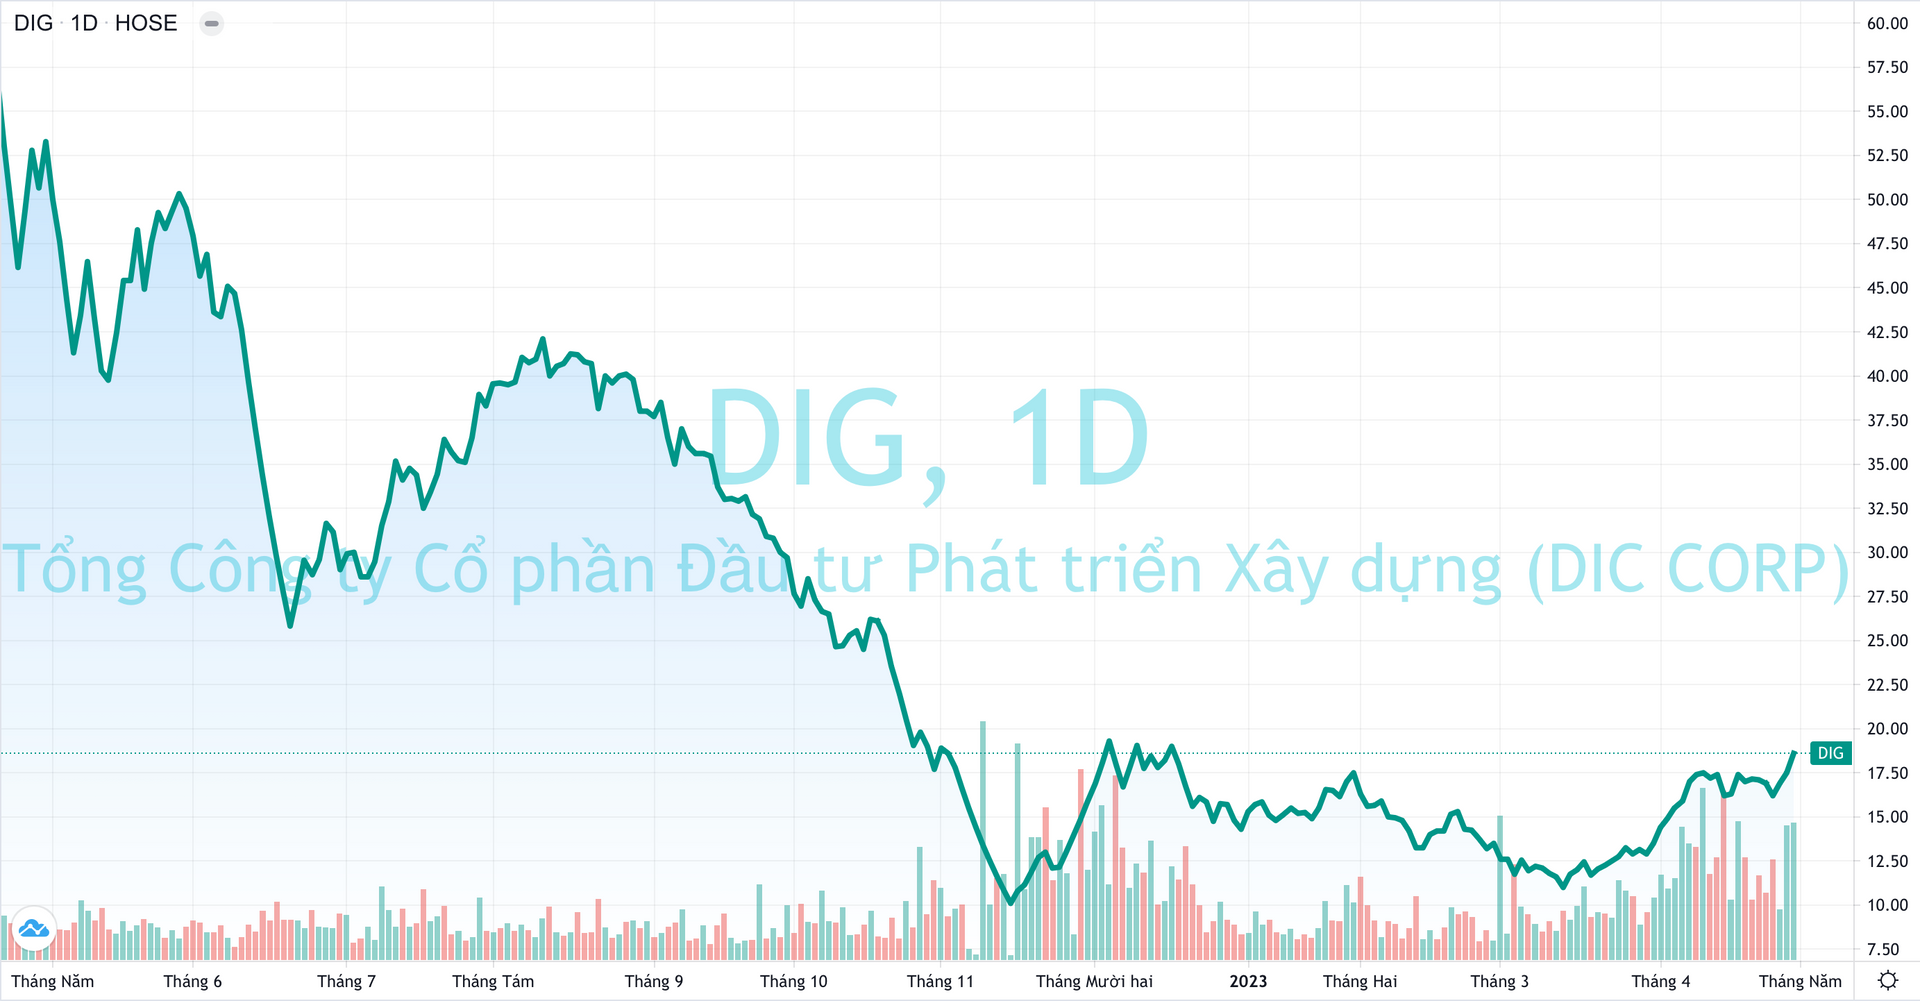 DIC Corp (DIG) báo lãi tăng 16% dù hụt thu từ bất động sản, nợ vay giảm gần 1.100 tỷ đồng - Ảnh 3.